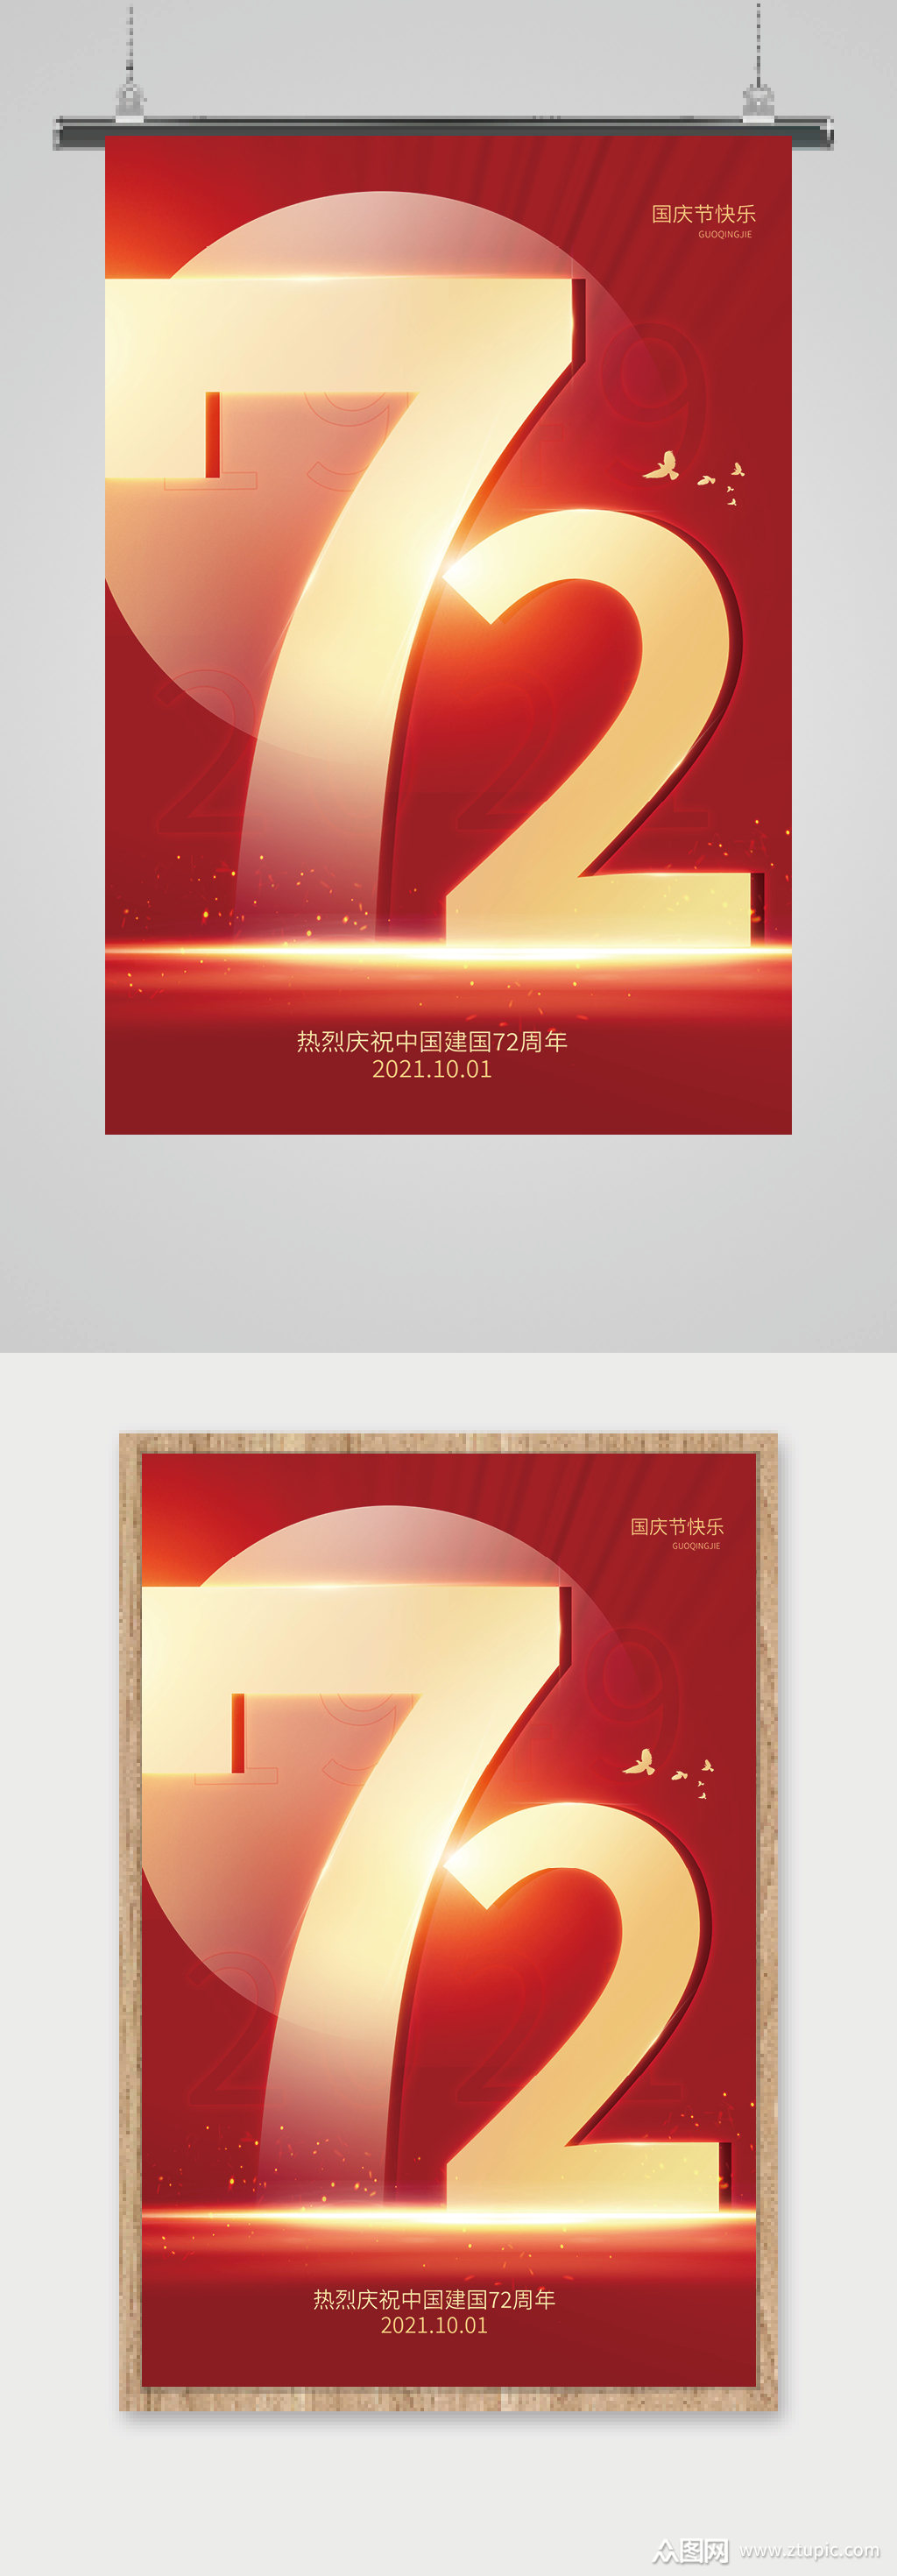 红色大气简约庆祝72周年国庆节宣传海报素材